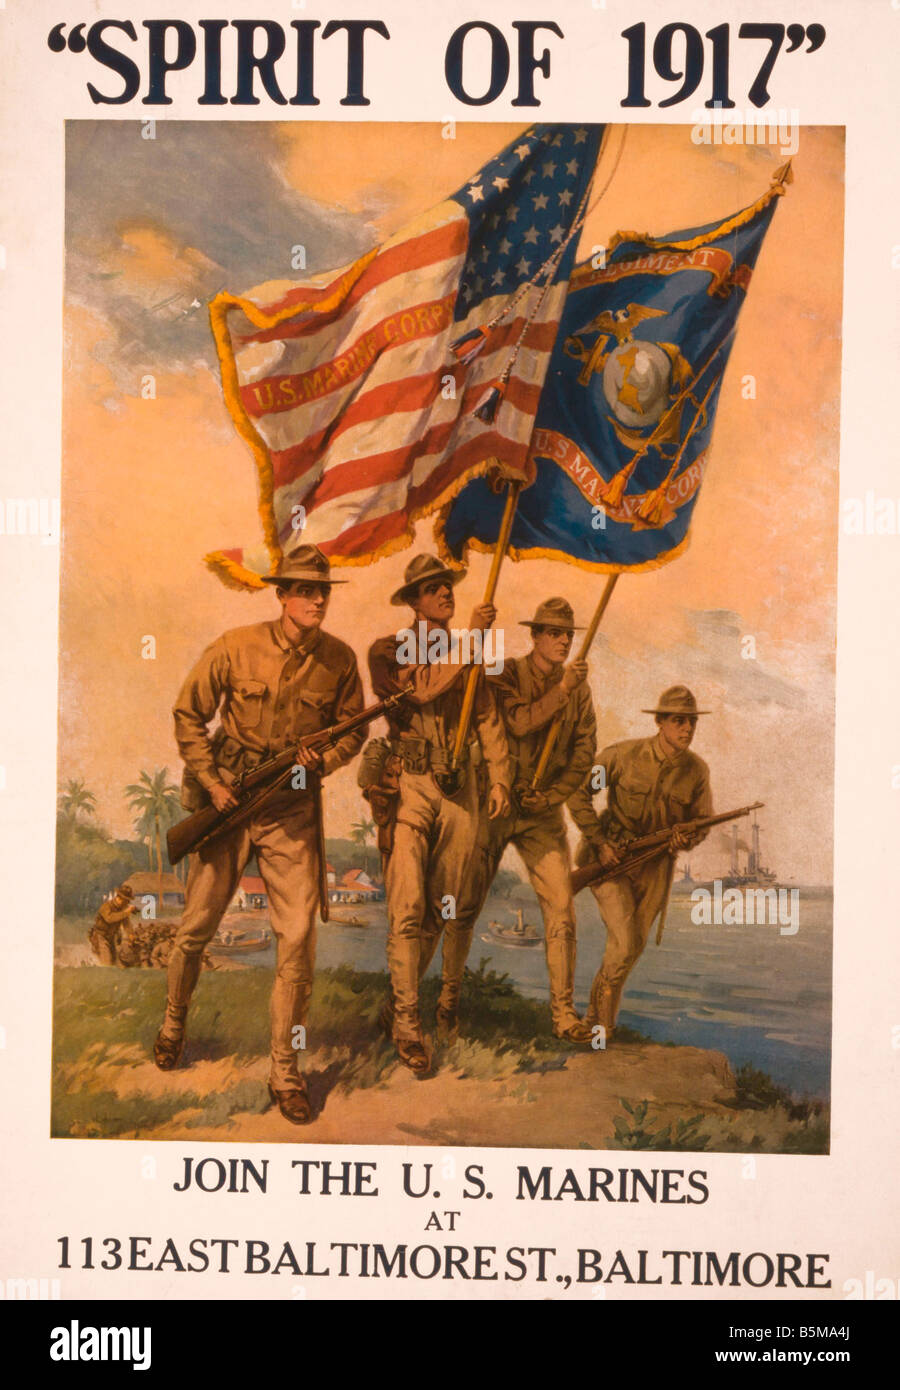 2 G55 P1 1917 43 WW I USA Geist der 1917 Marines Poster Geschichte Weltkrieg Propaganda Geist von 1917 Join U S Marines Propa Stockfoto